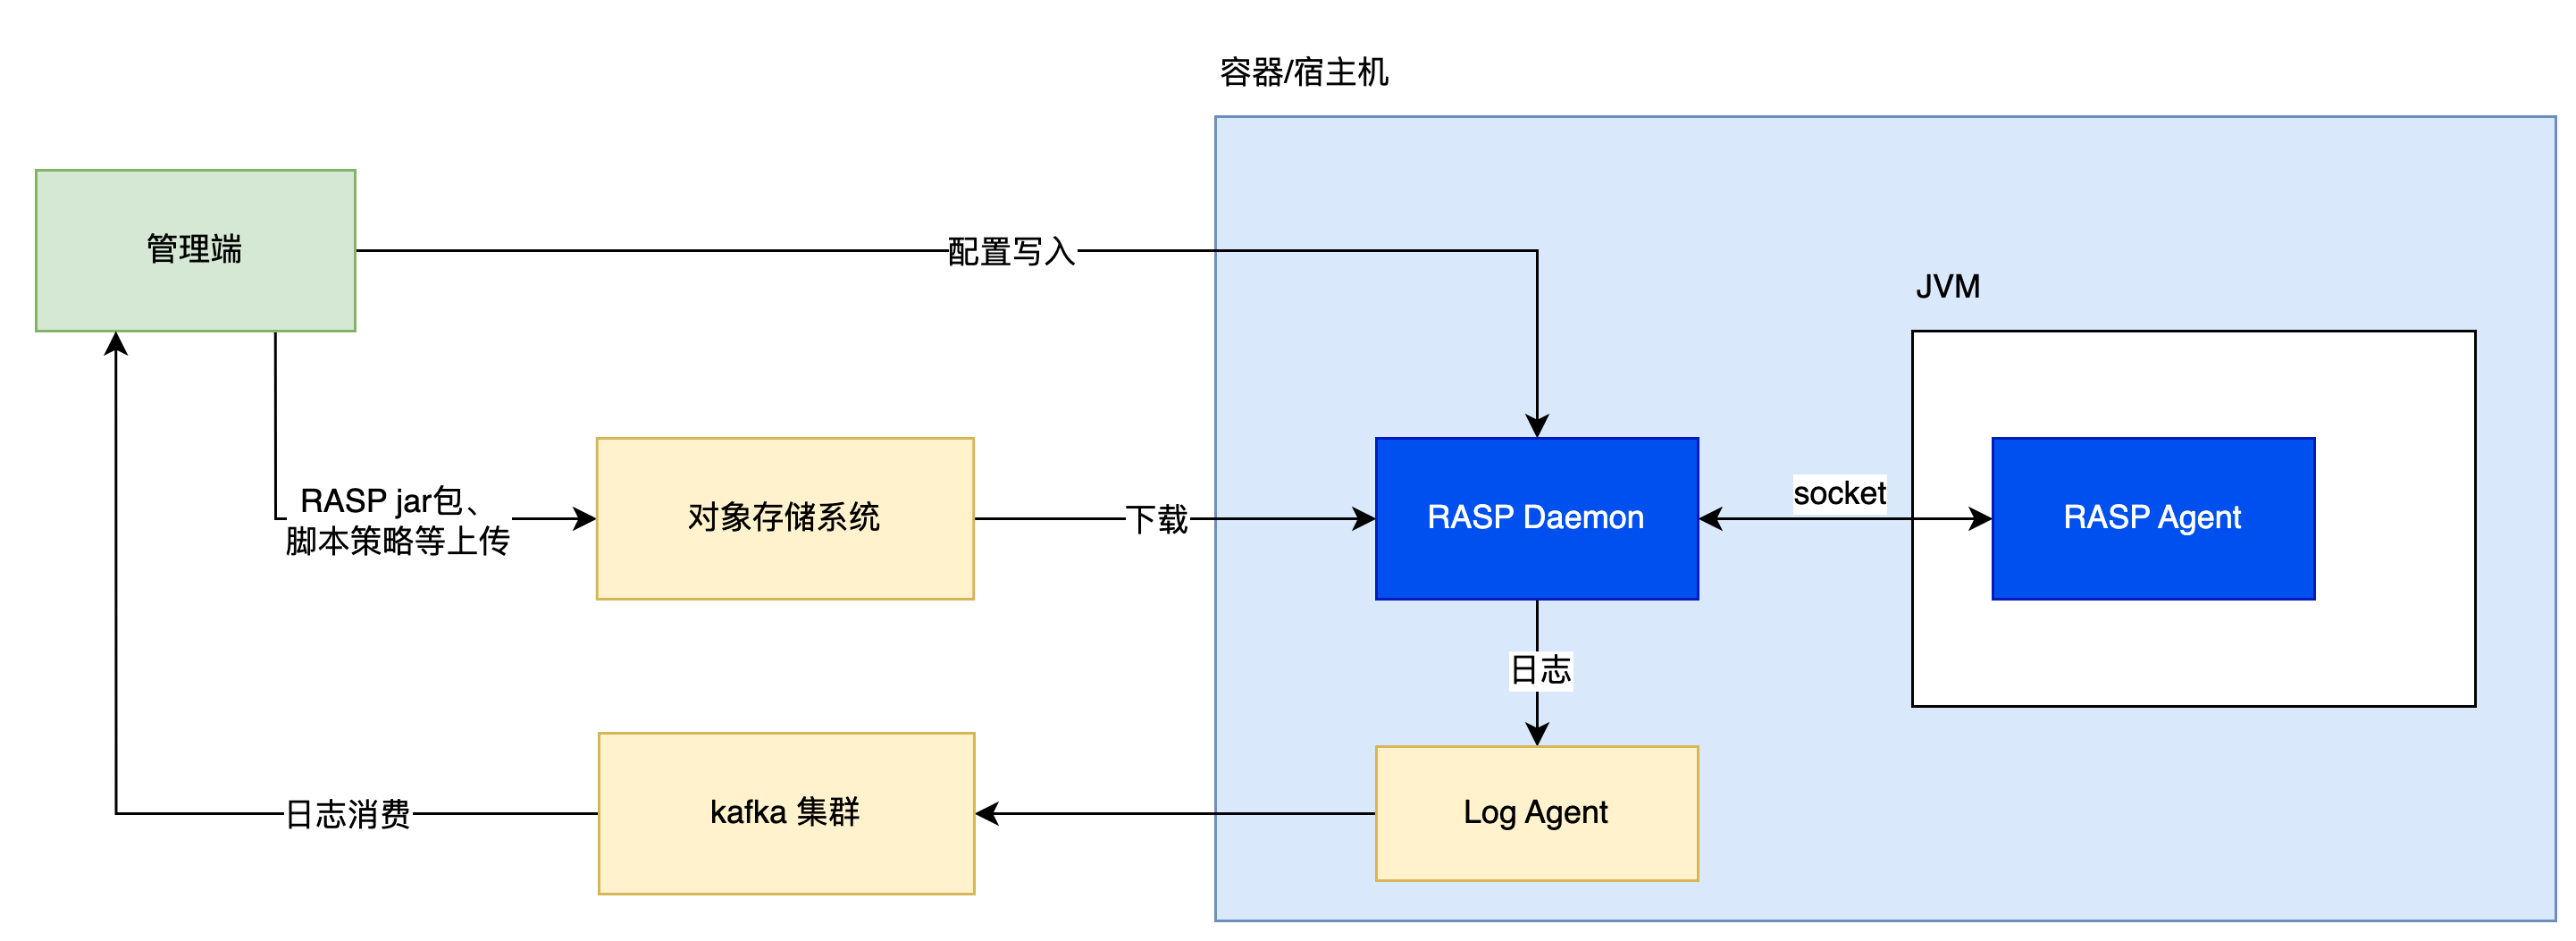 图7 RASP的配置分发流程